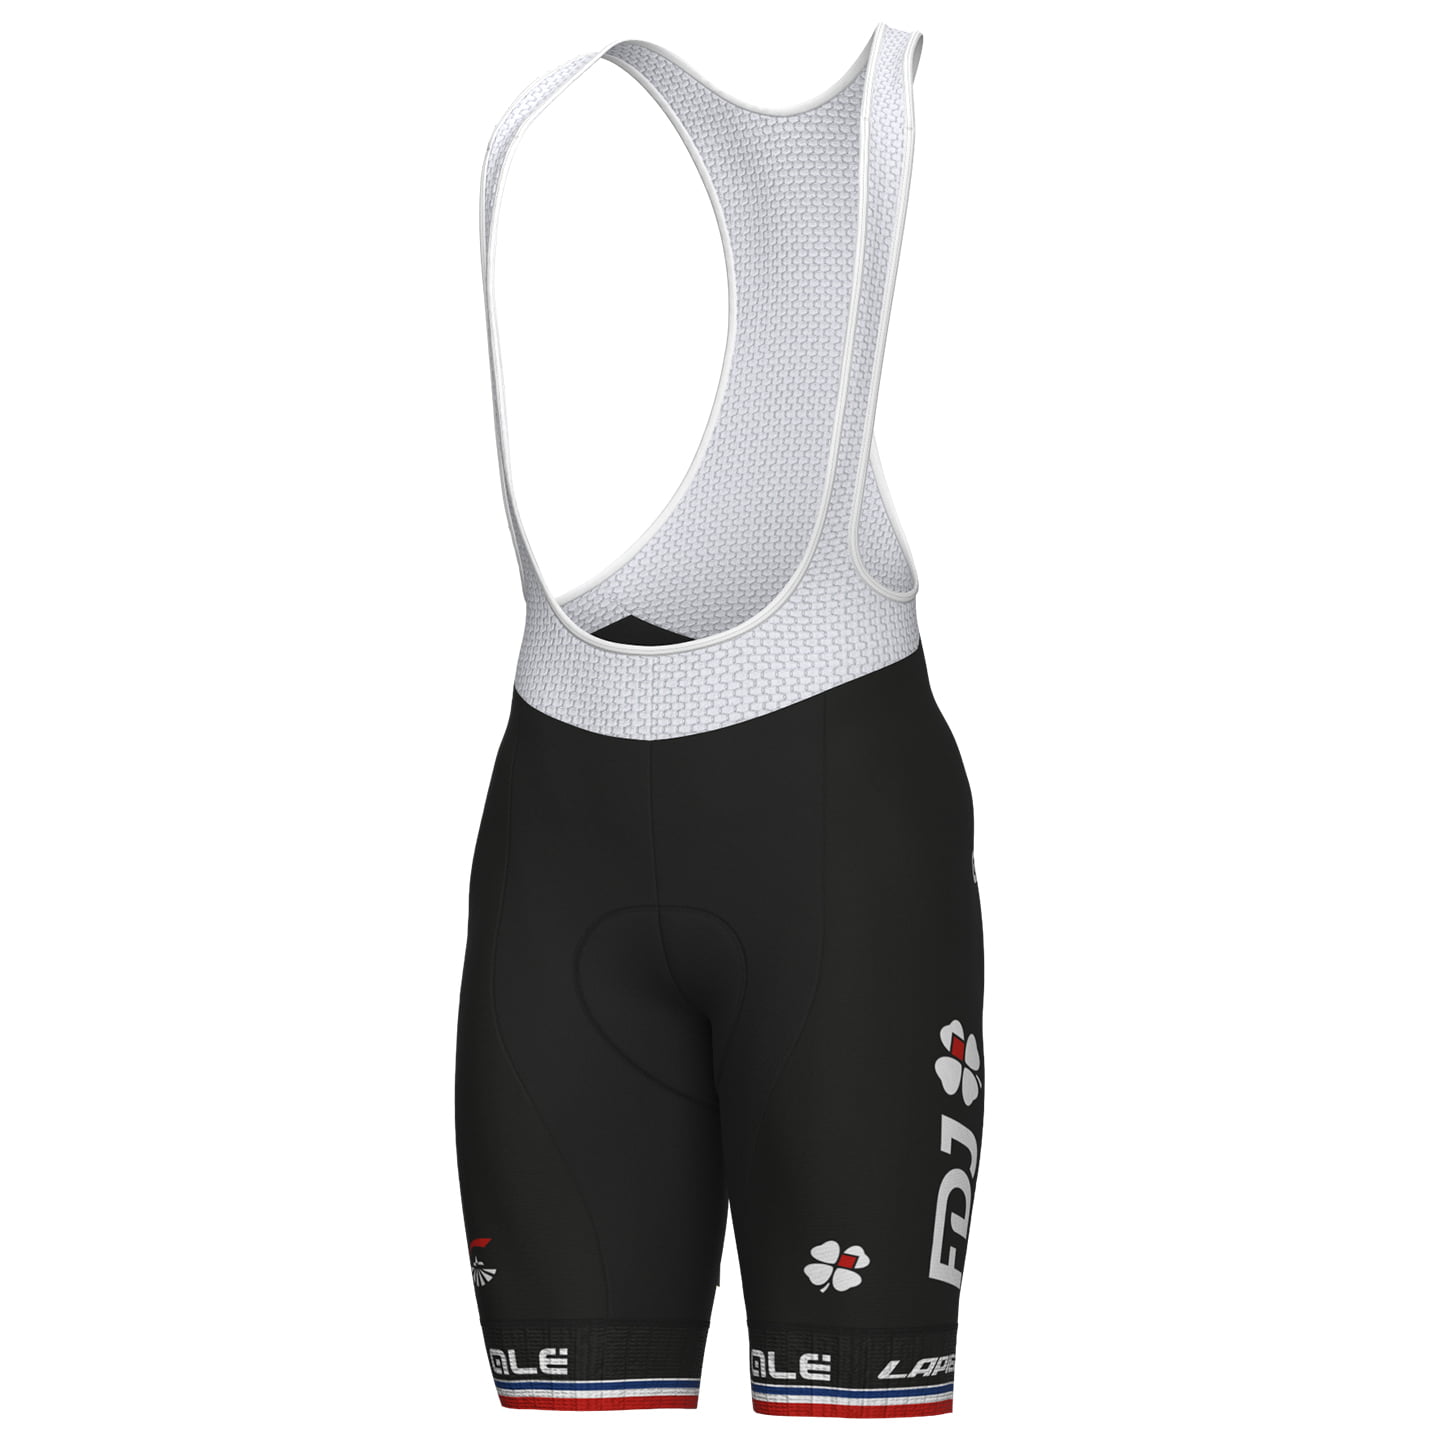 GROUPAMA - FDJ French Champion 2023 Bib Shorts, for men, size 3XL, Cycling bibs, Bike gear